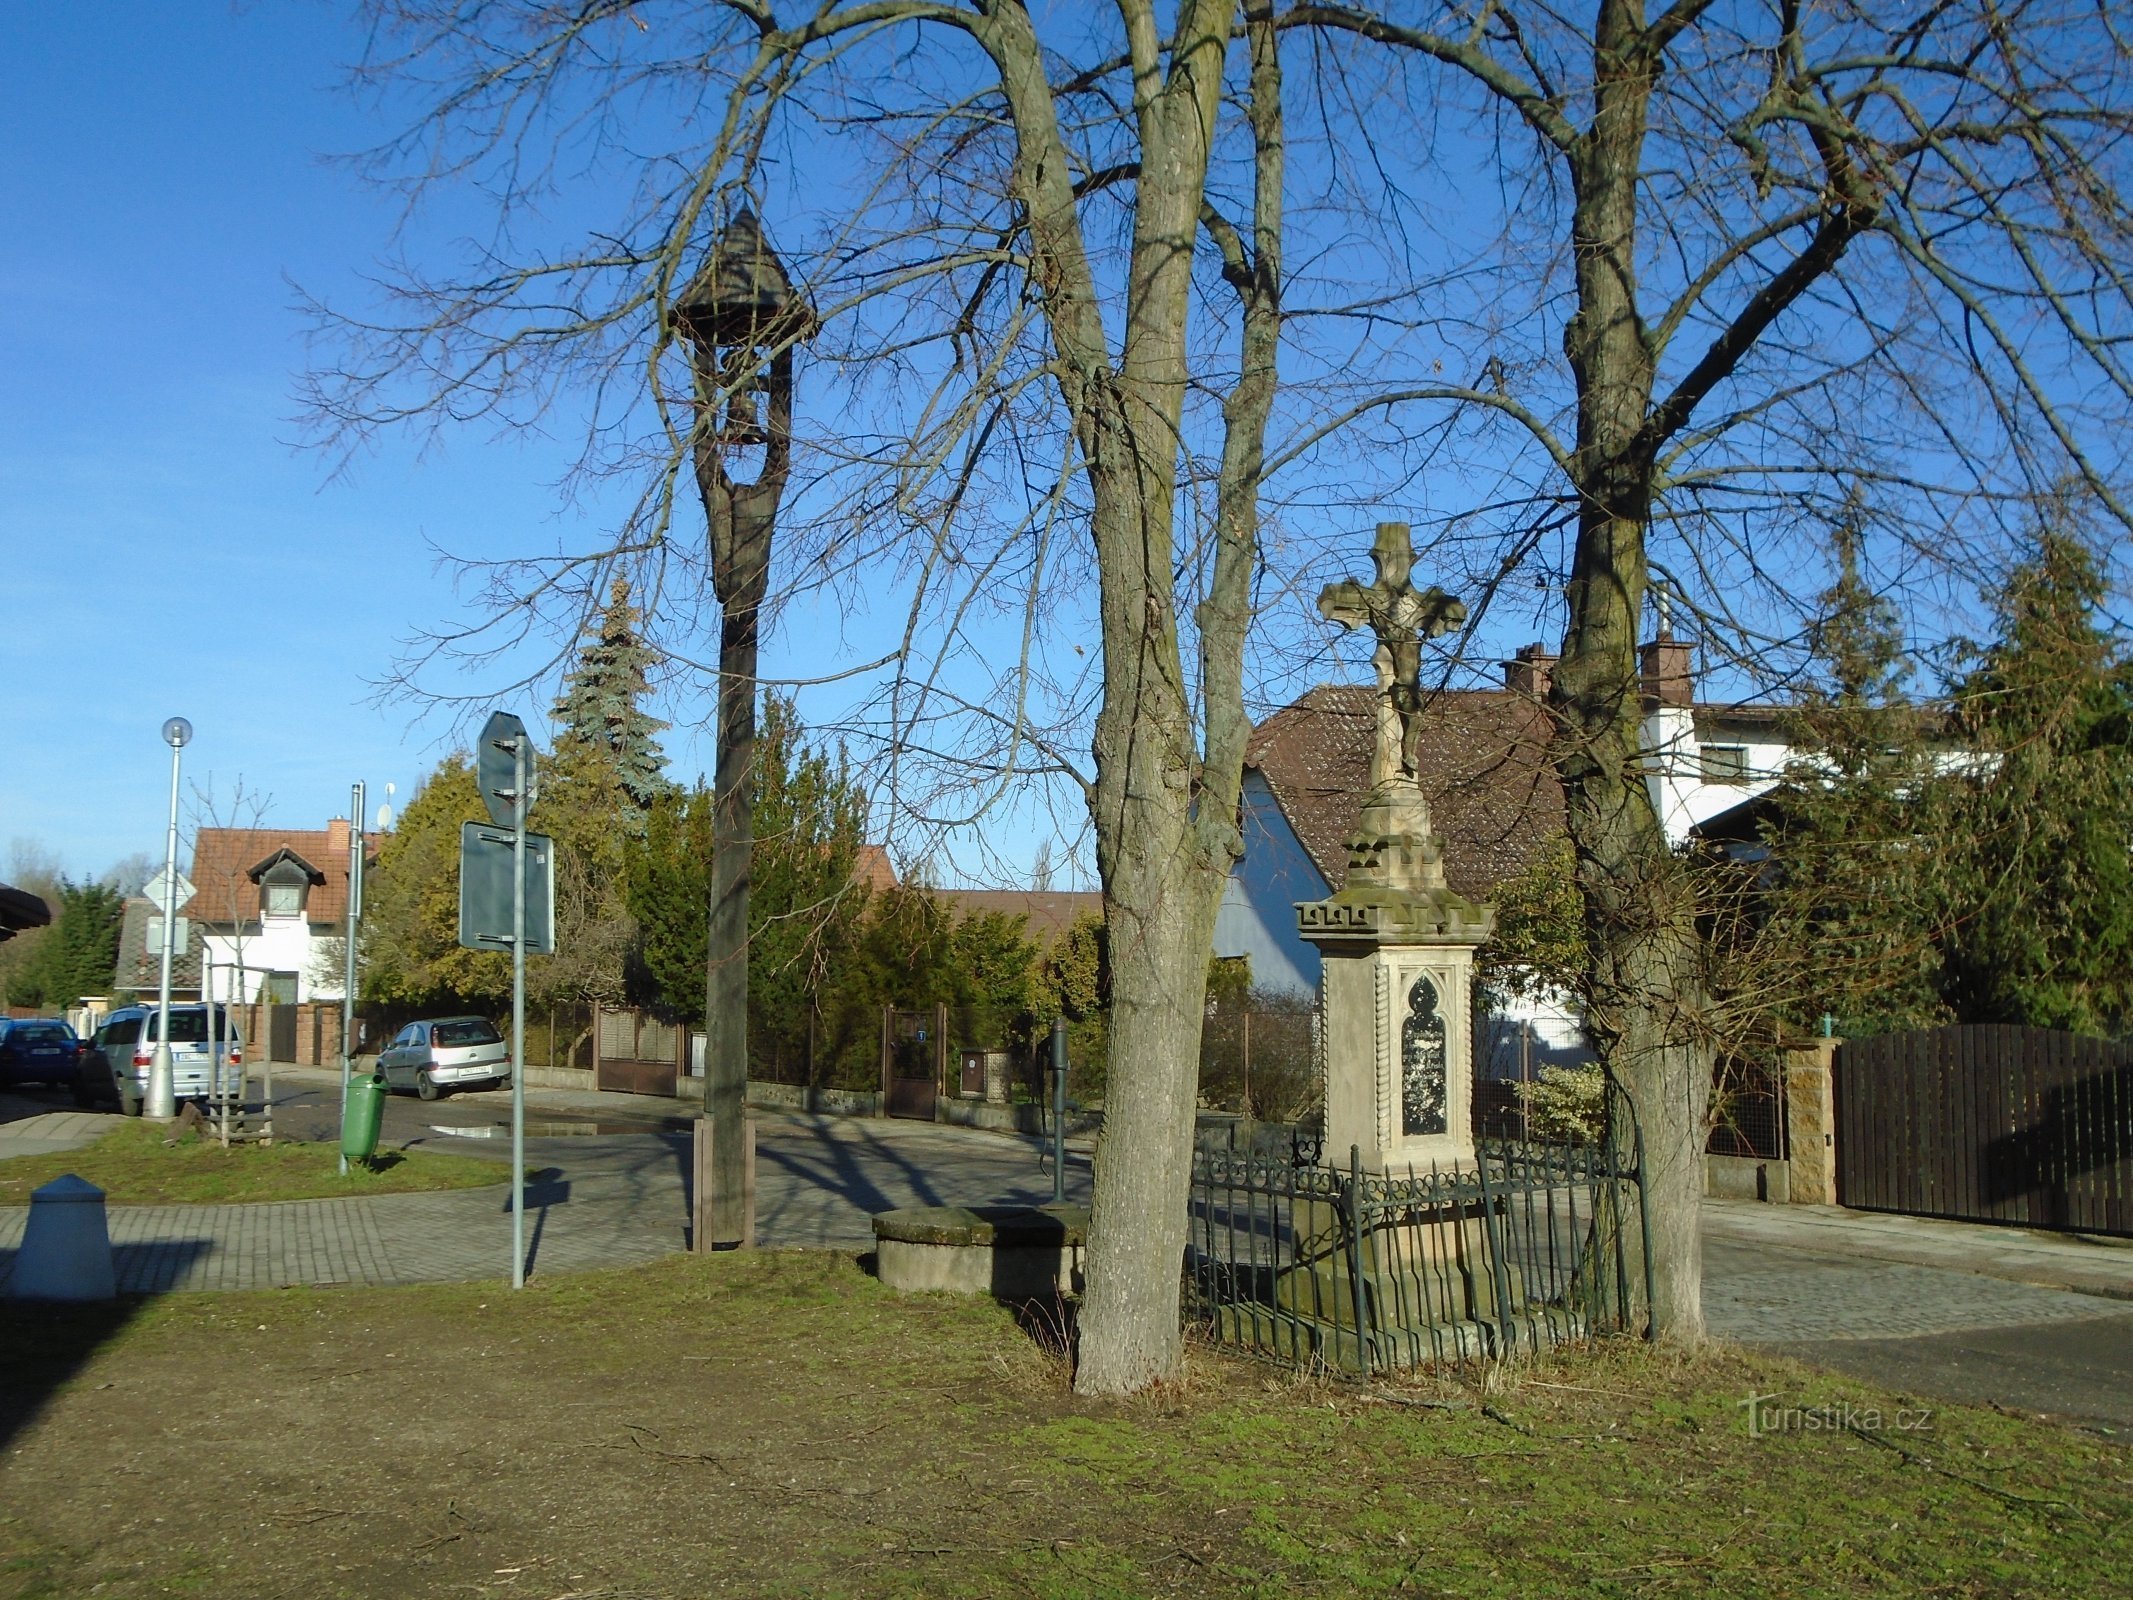 Zvonik in križ v ulici Machková (Třebeš)